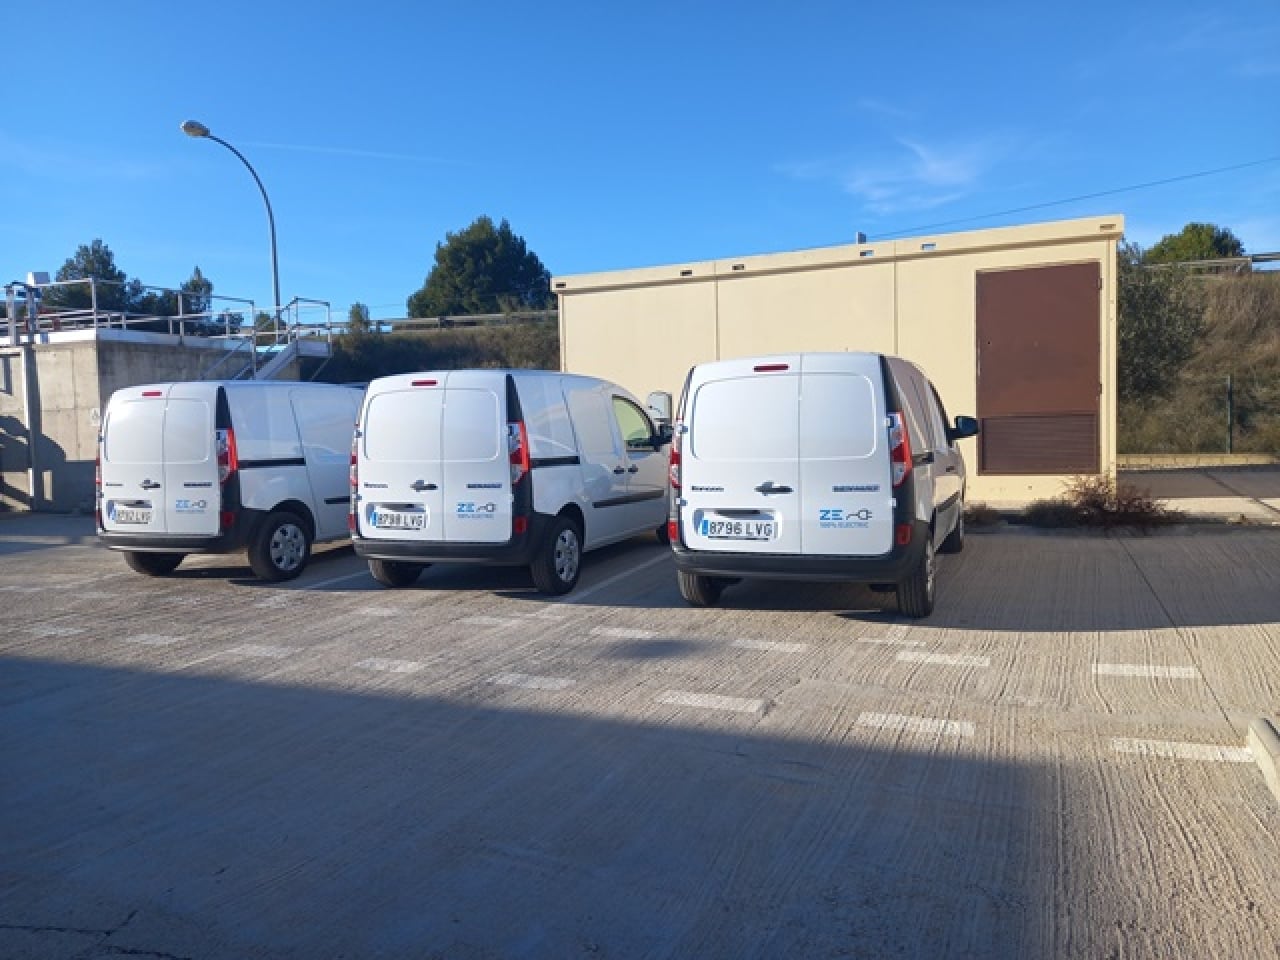 Les depuradores de la Conca de Barberà han renovat el parc mòbil de vehicles, amb la incorporació de tres vehicles elèctrics i un vehicle híbrid